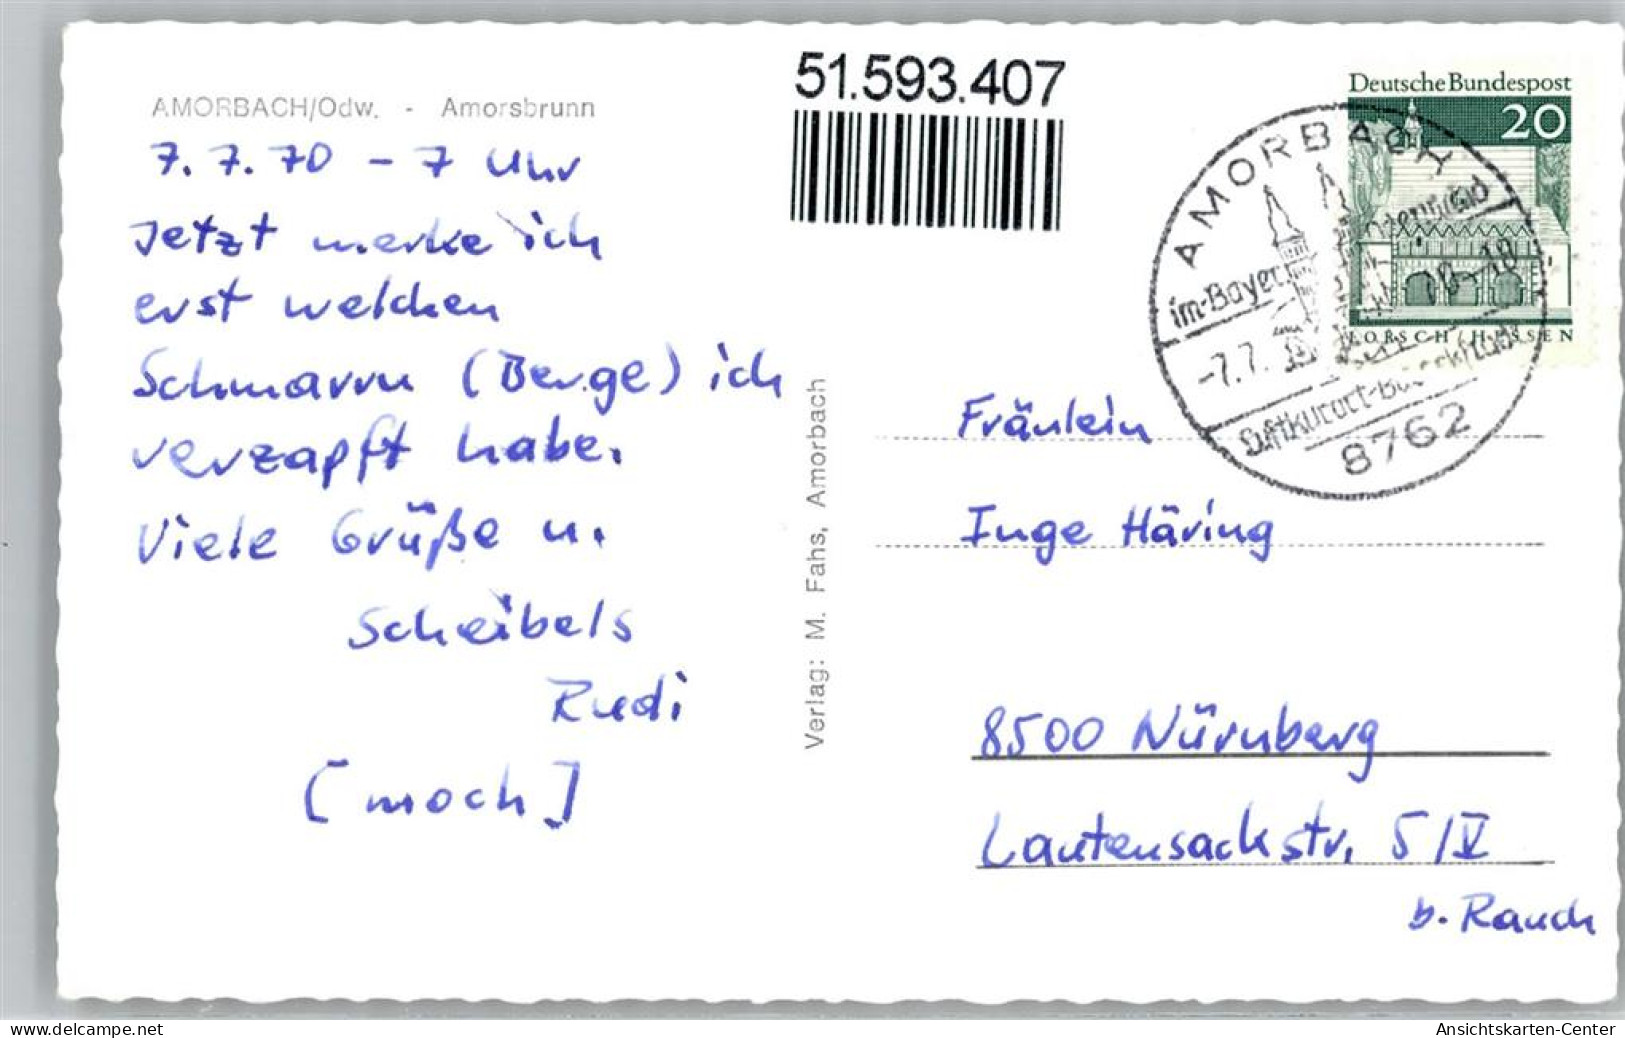 51593407 - Amorbach - Amorbach